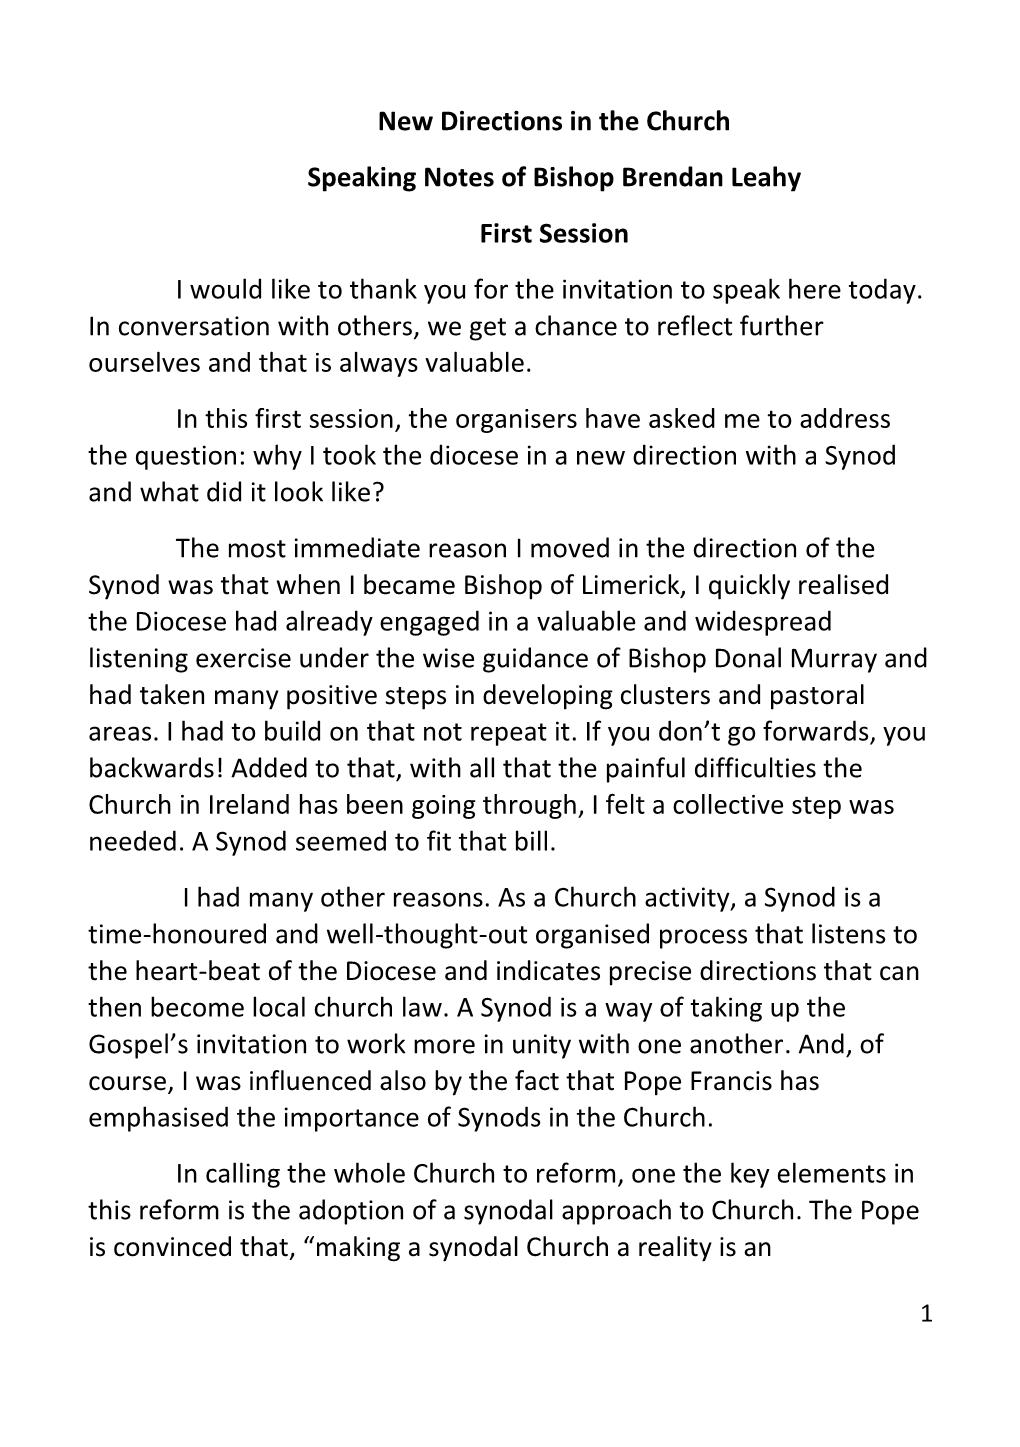 Speaking Notes of Bishop Brendan Leahy.PDF